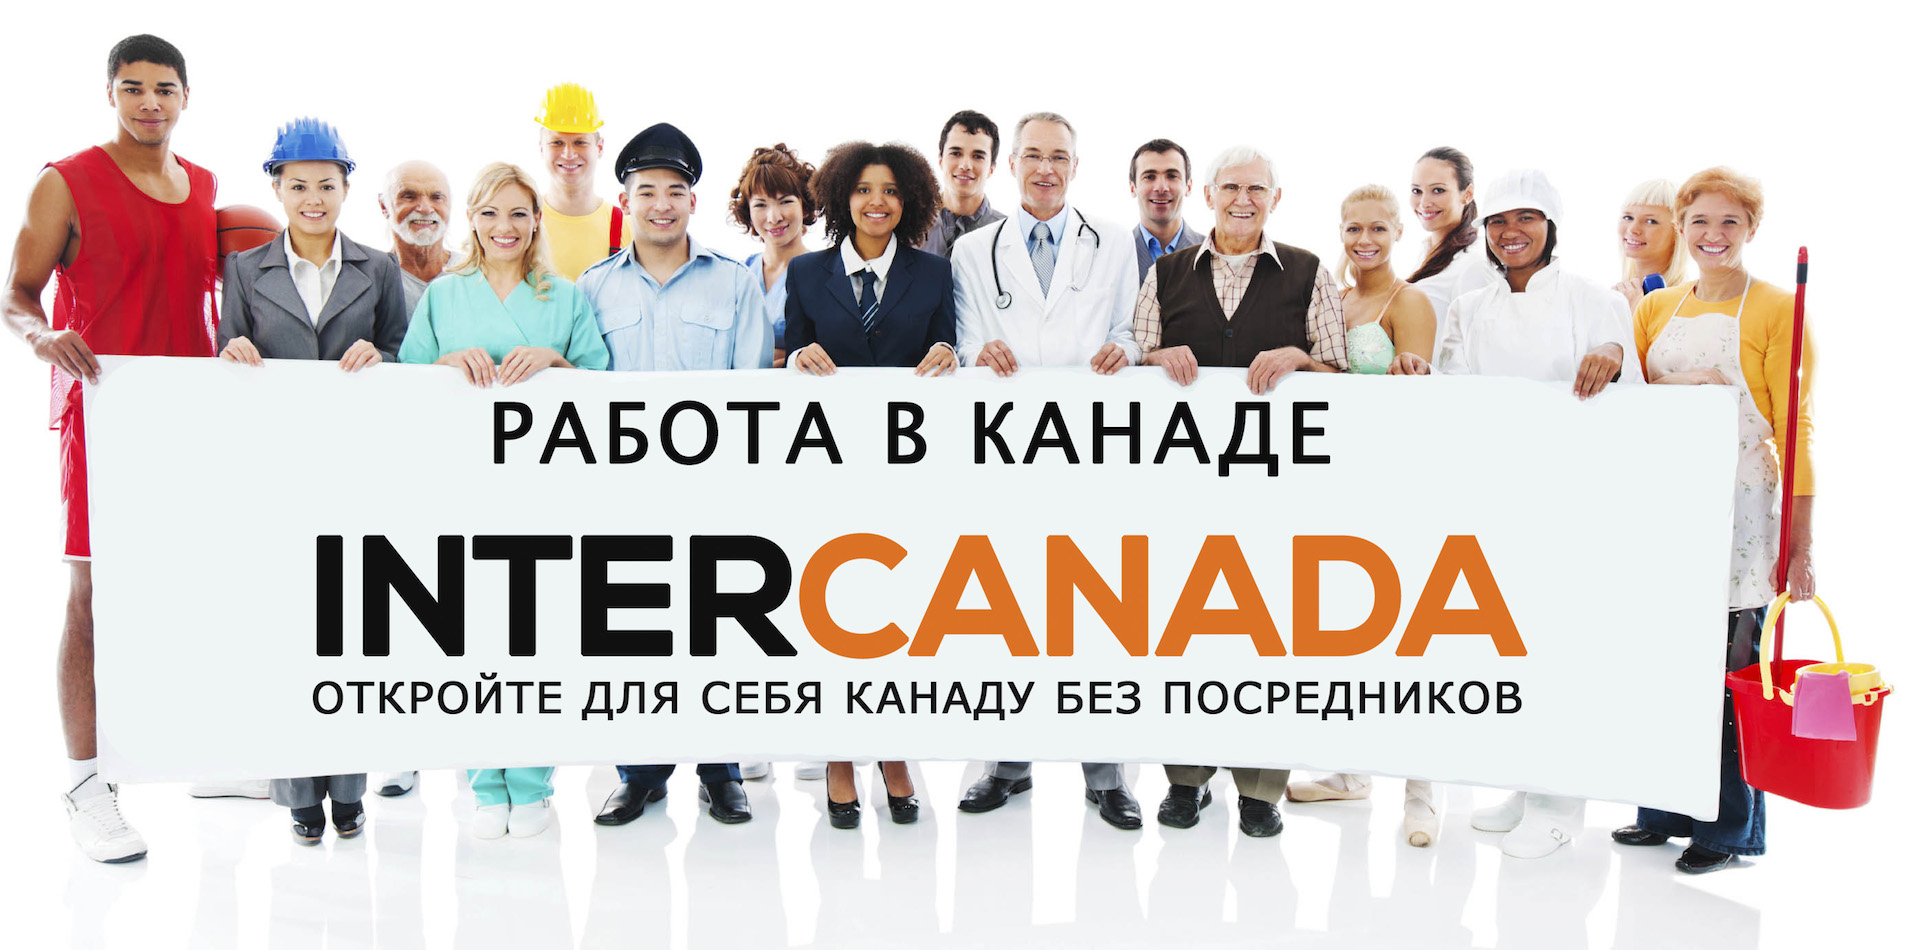 Работа в Канаде для русских: поиск и трудоустройство